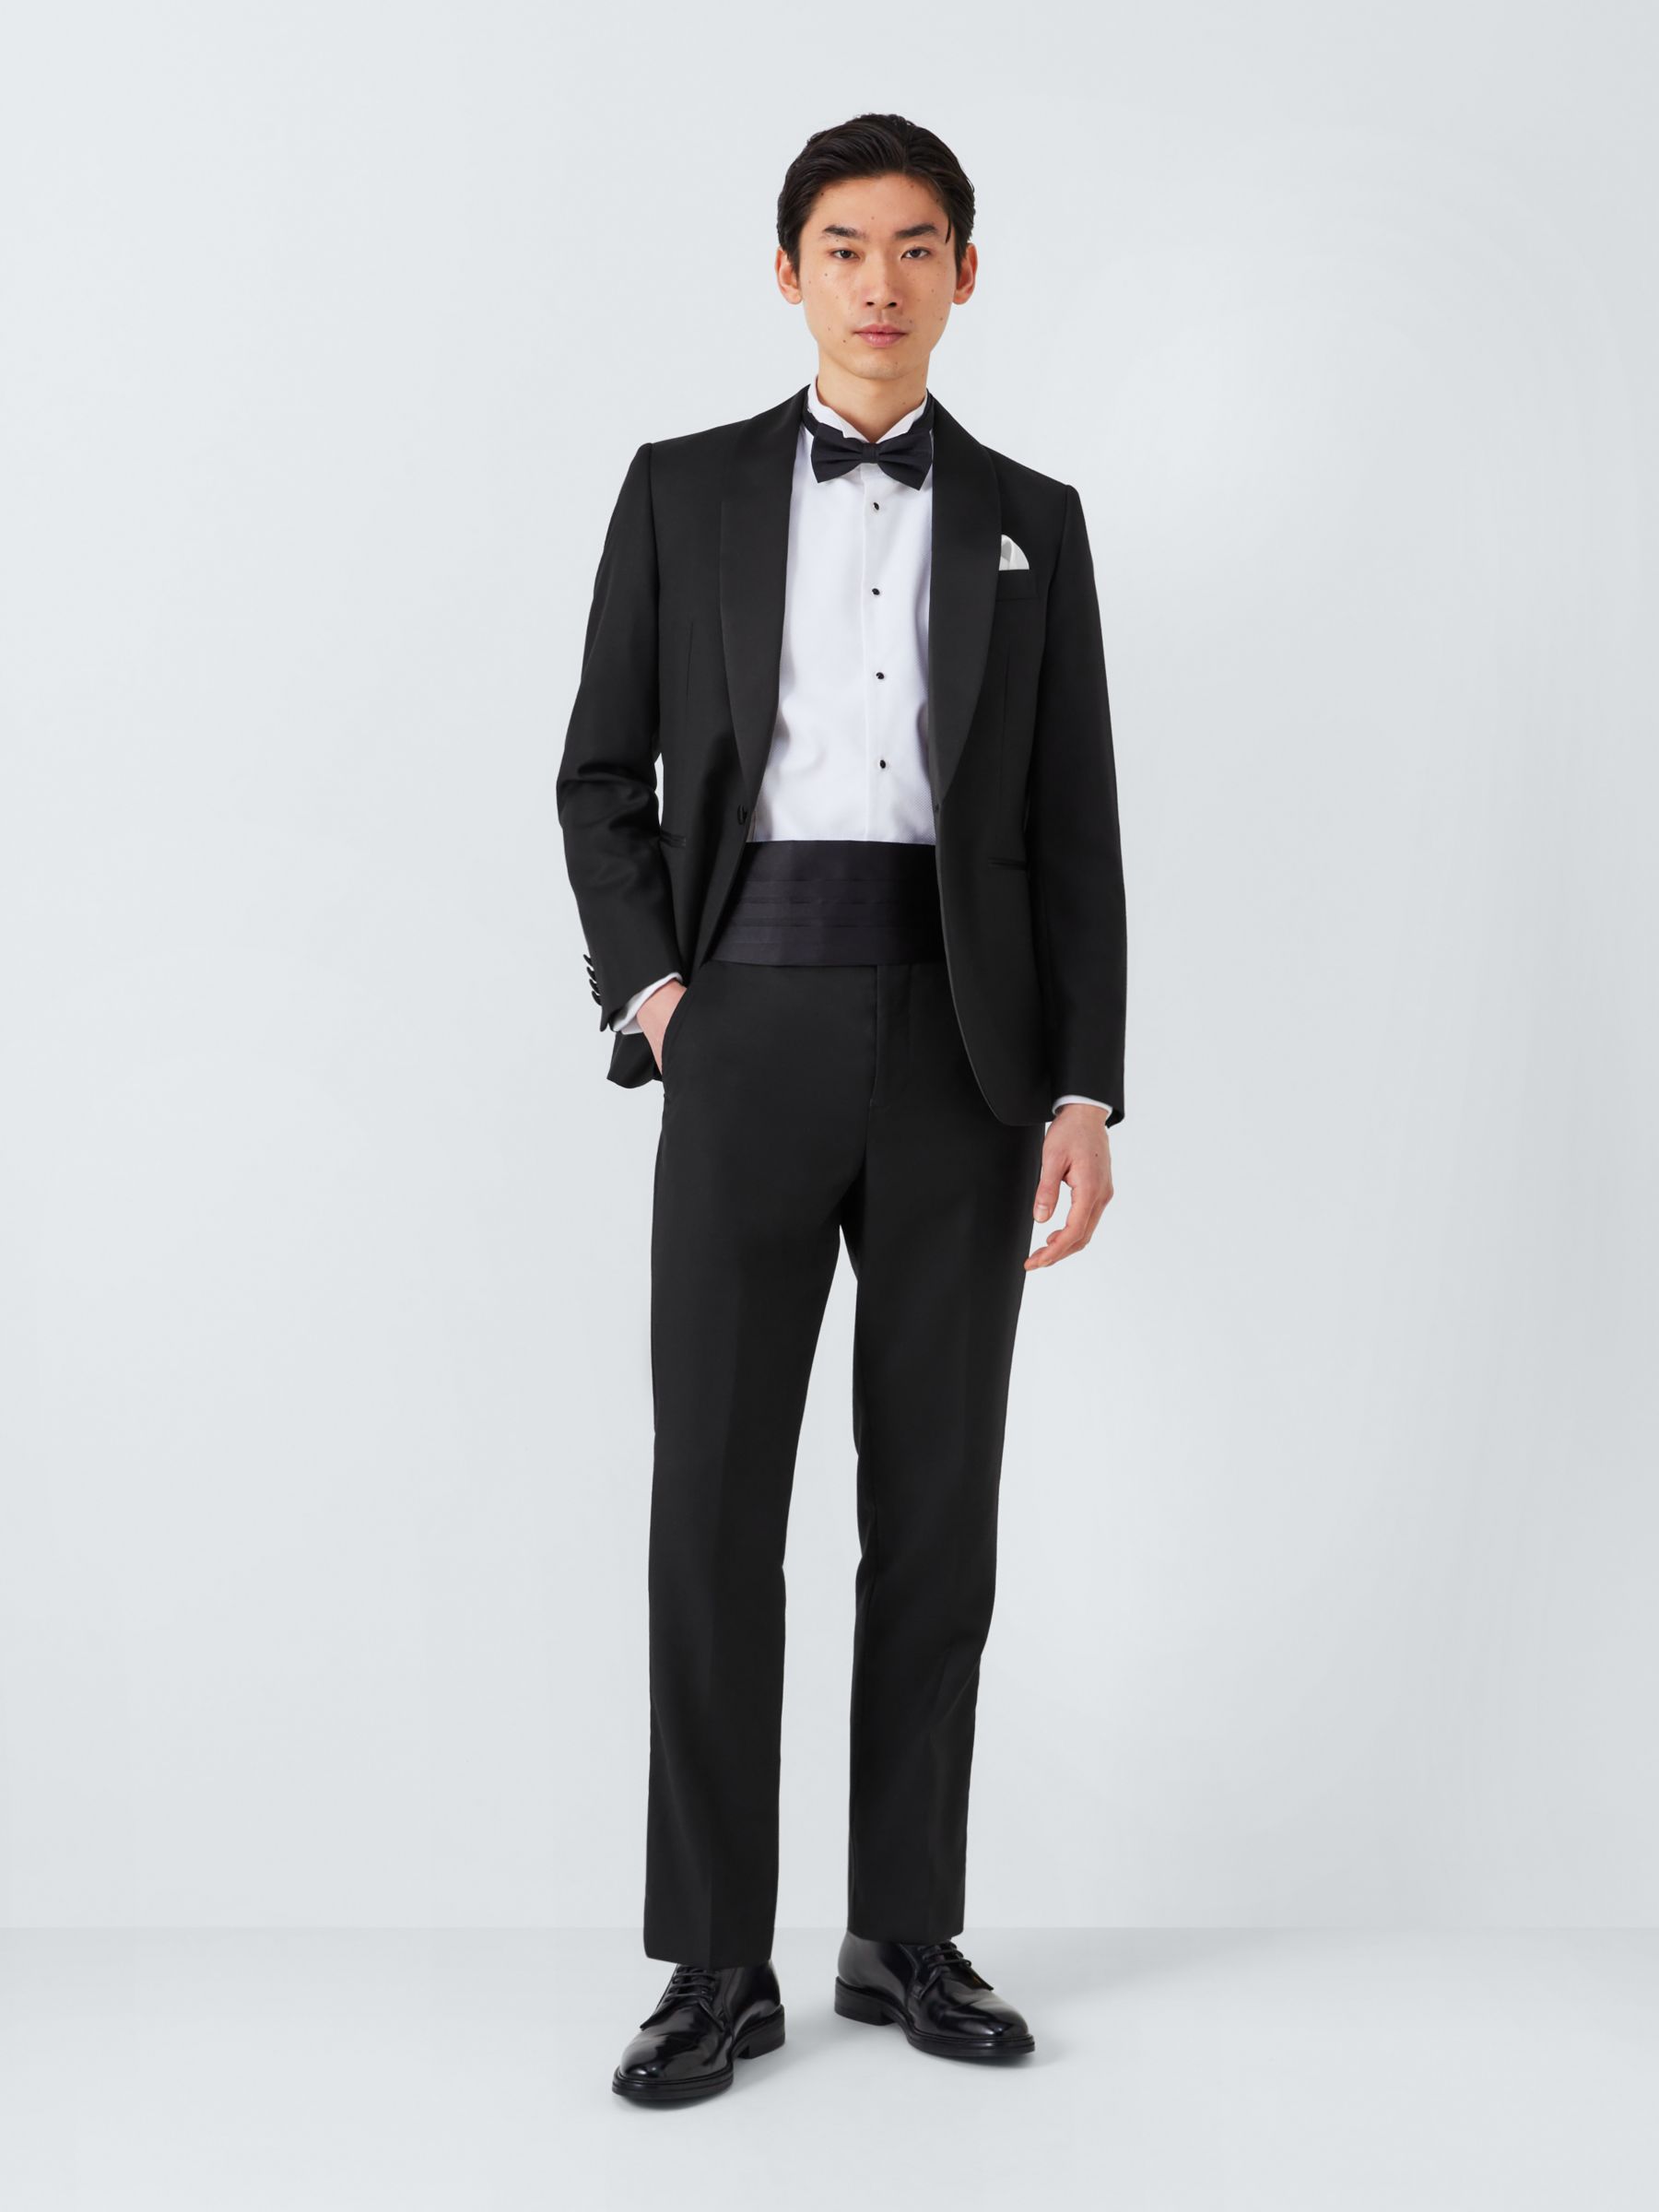 John Lewis Basket Weave Dinner Suit Trousers, Black, 30R